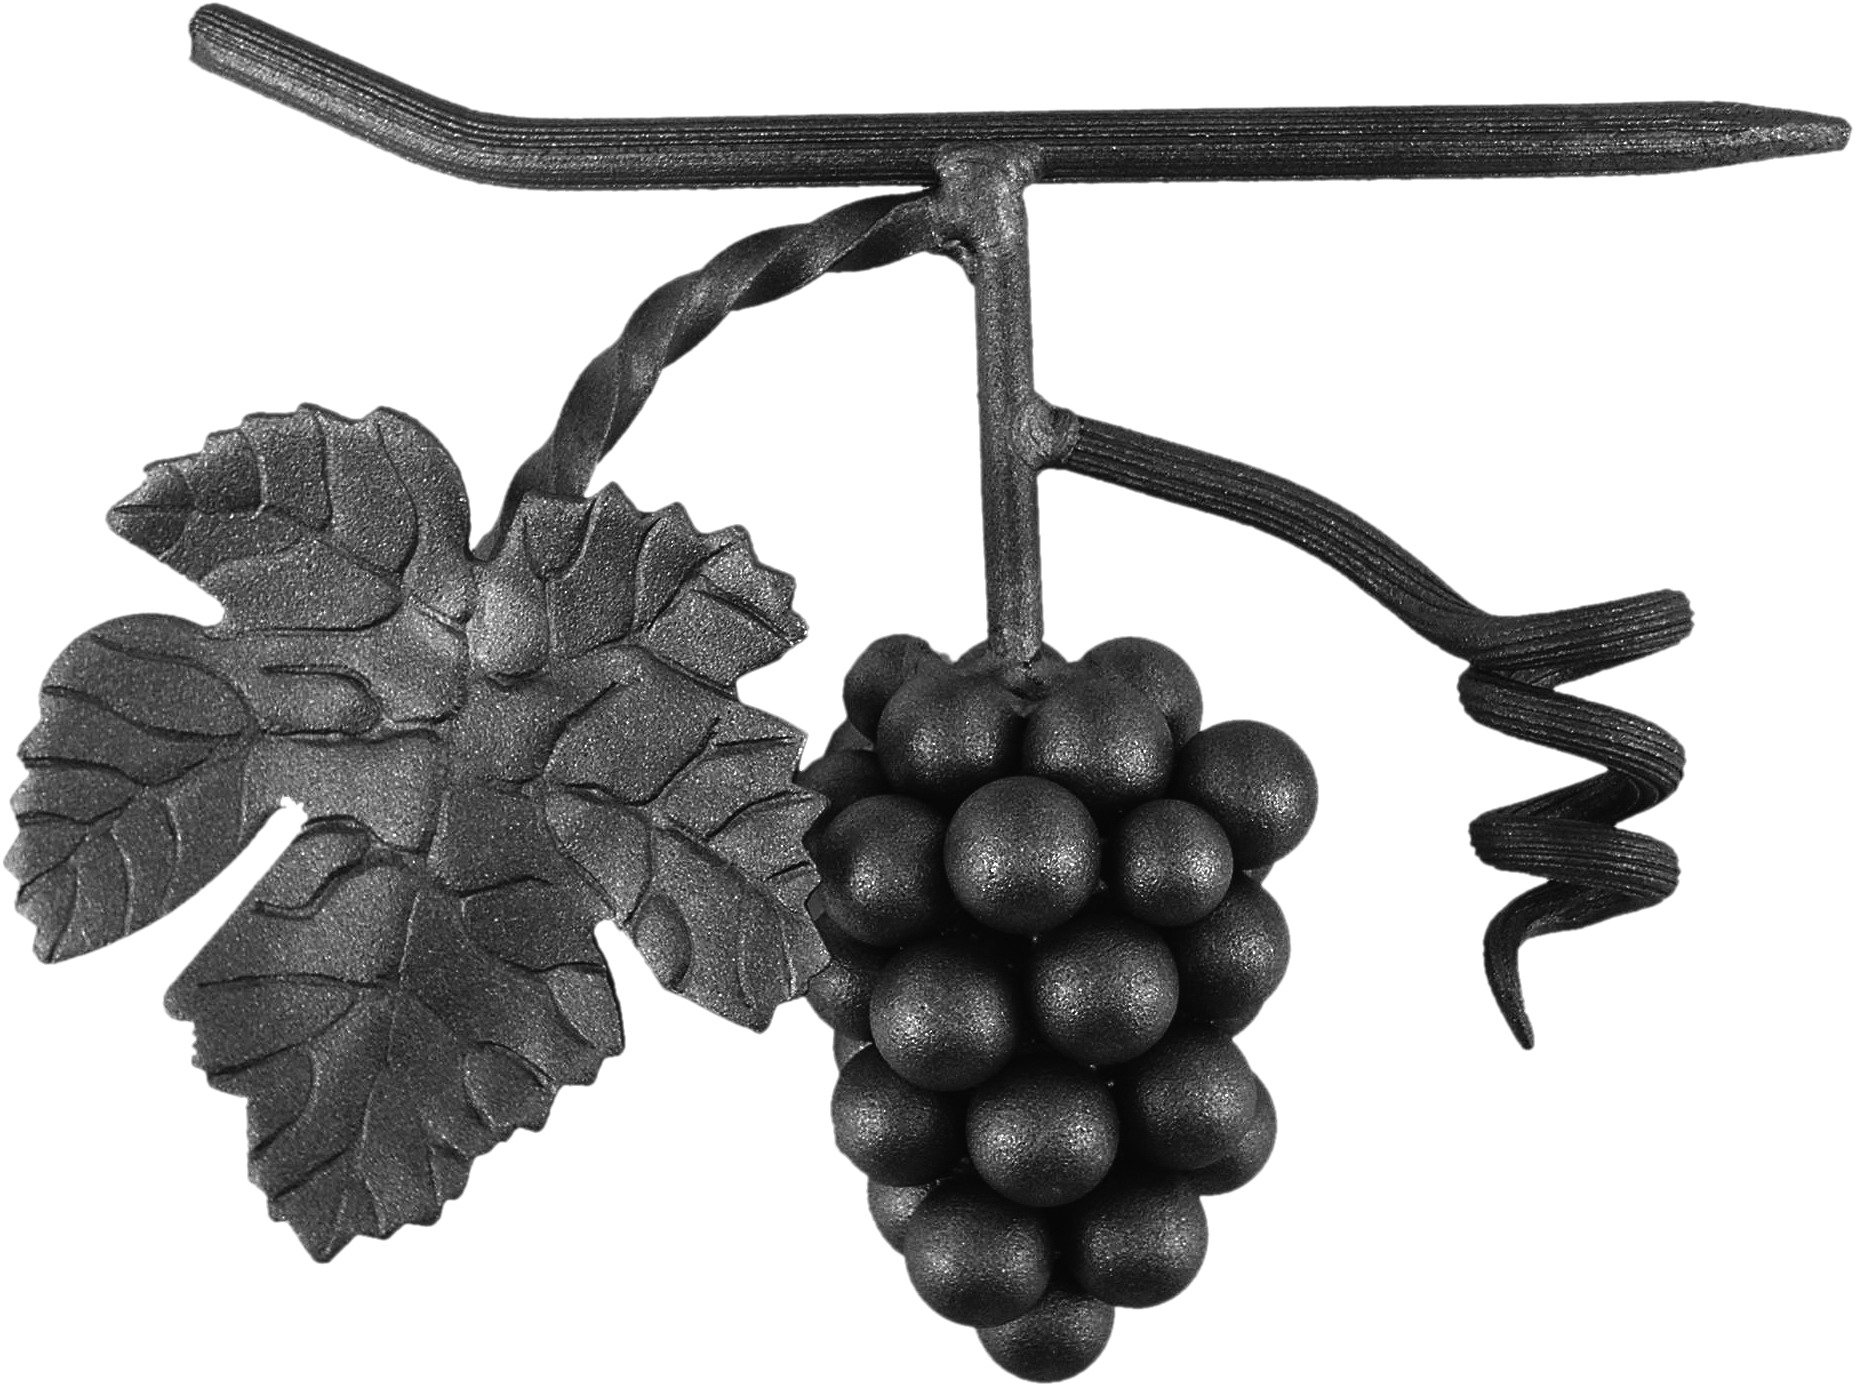 Décor représentant une grappe de raisins d'une hauteur de 180mm et d'une largeur de 180mm. En fer forgé.